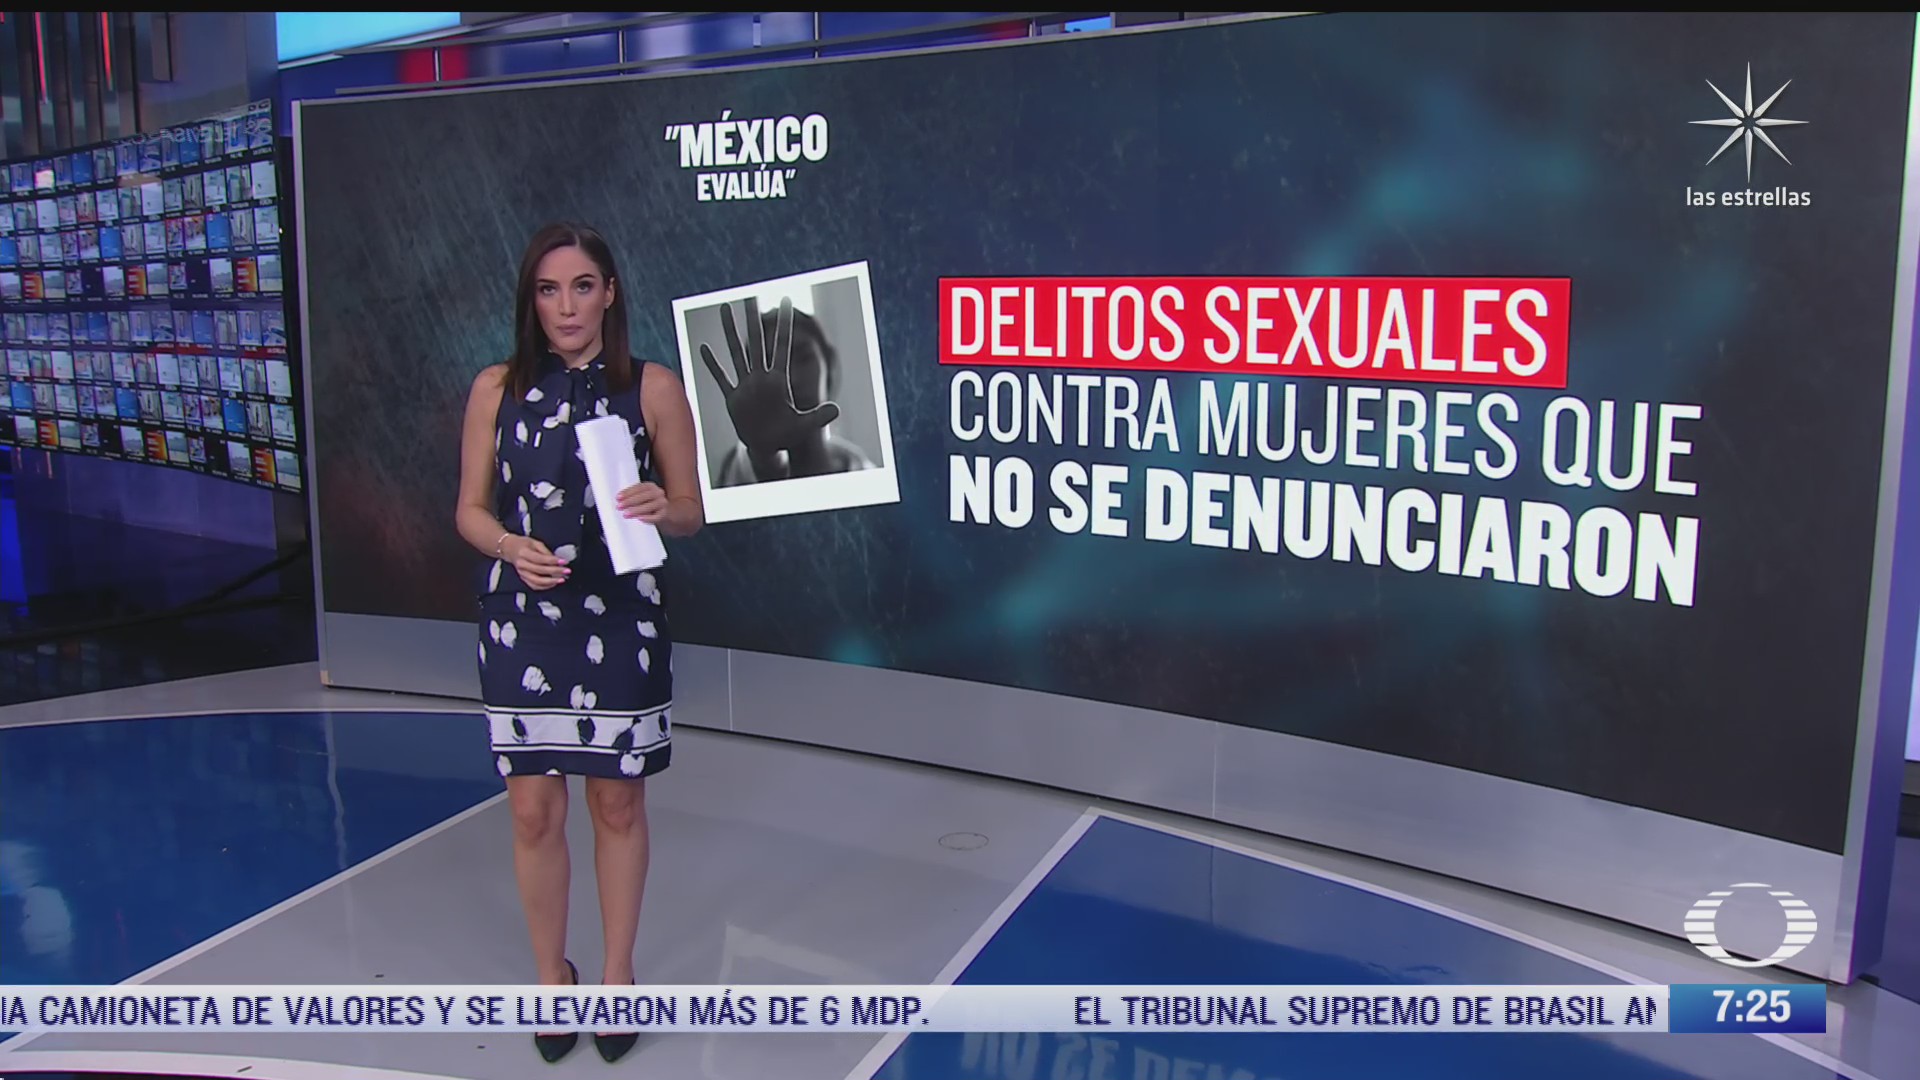 delitos sexuales los de mayor impunidad en mexico